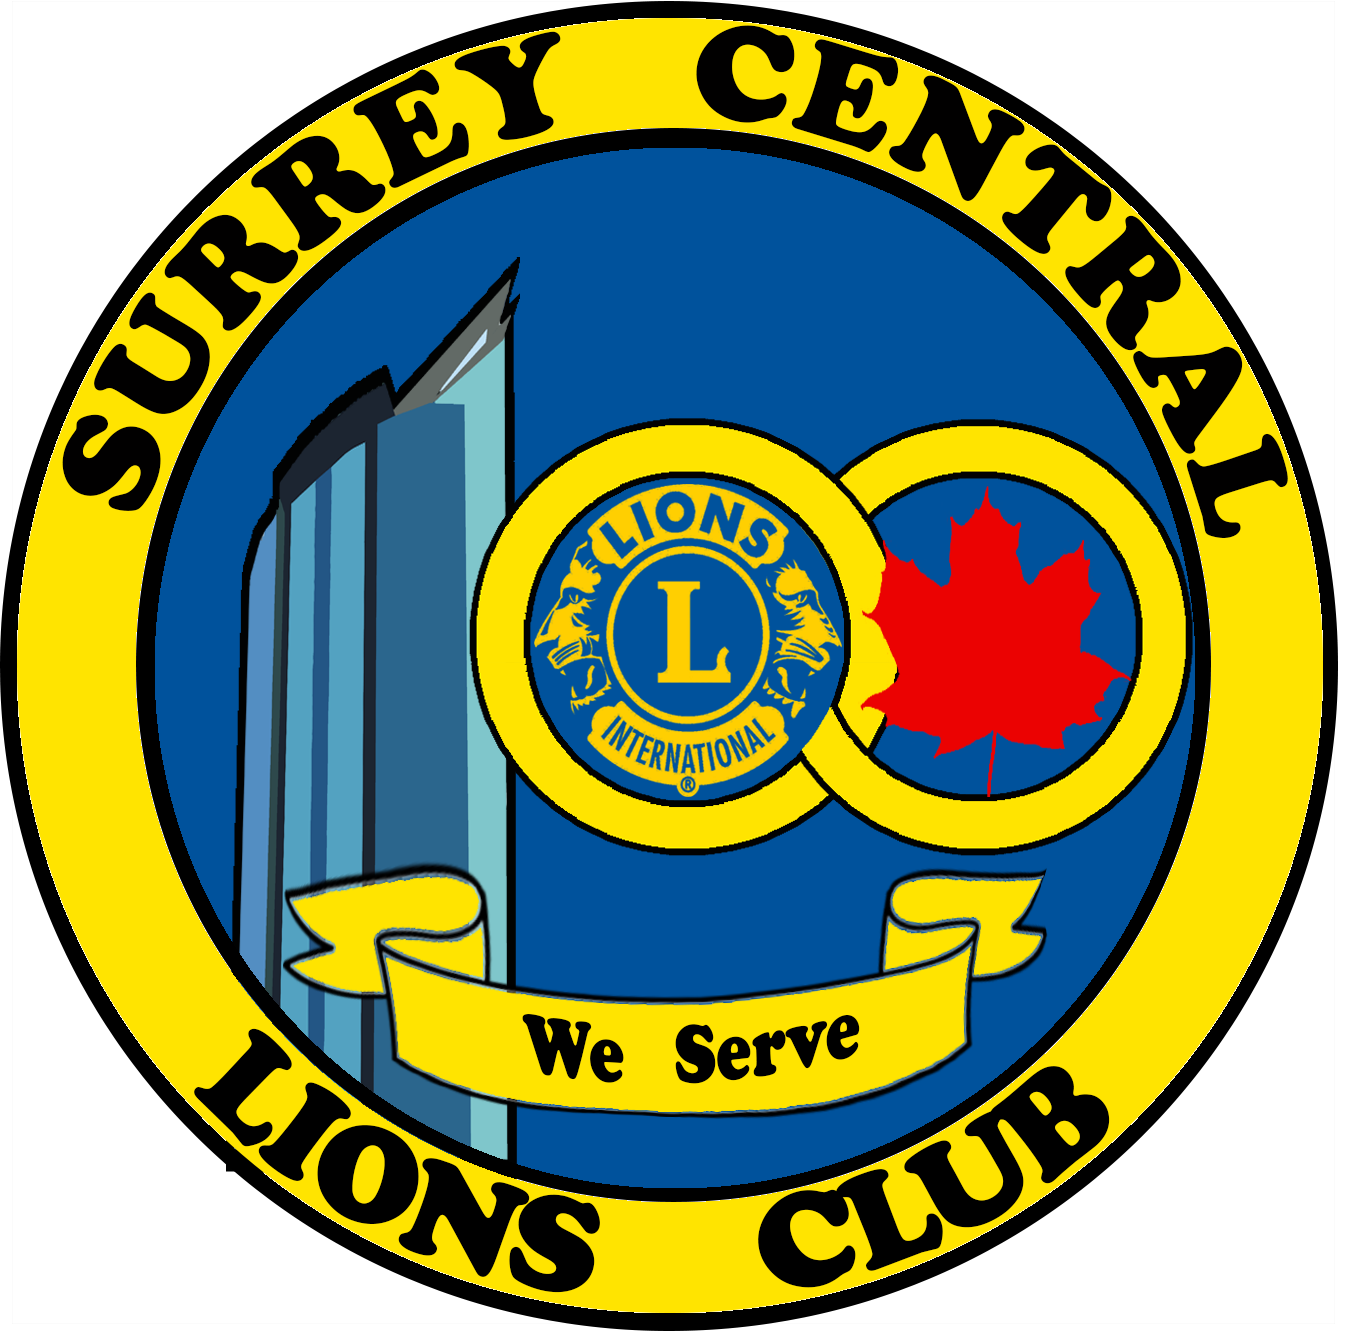 Surrey Central Lions